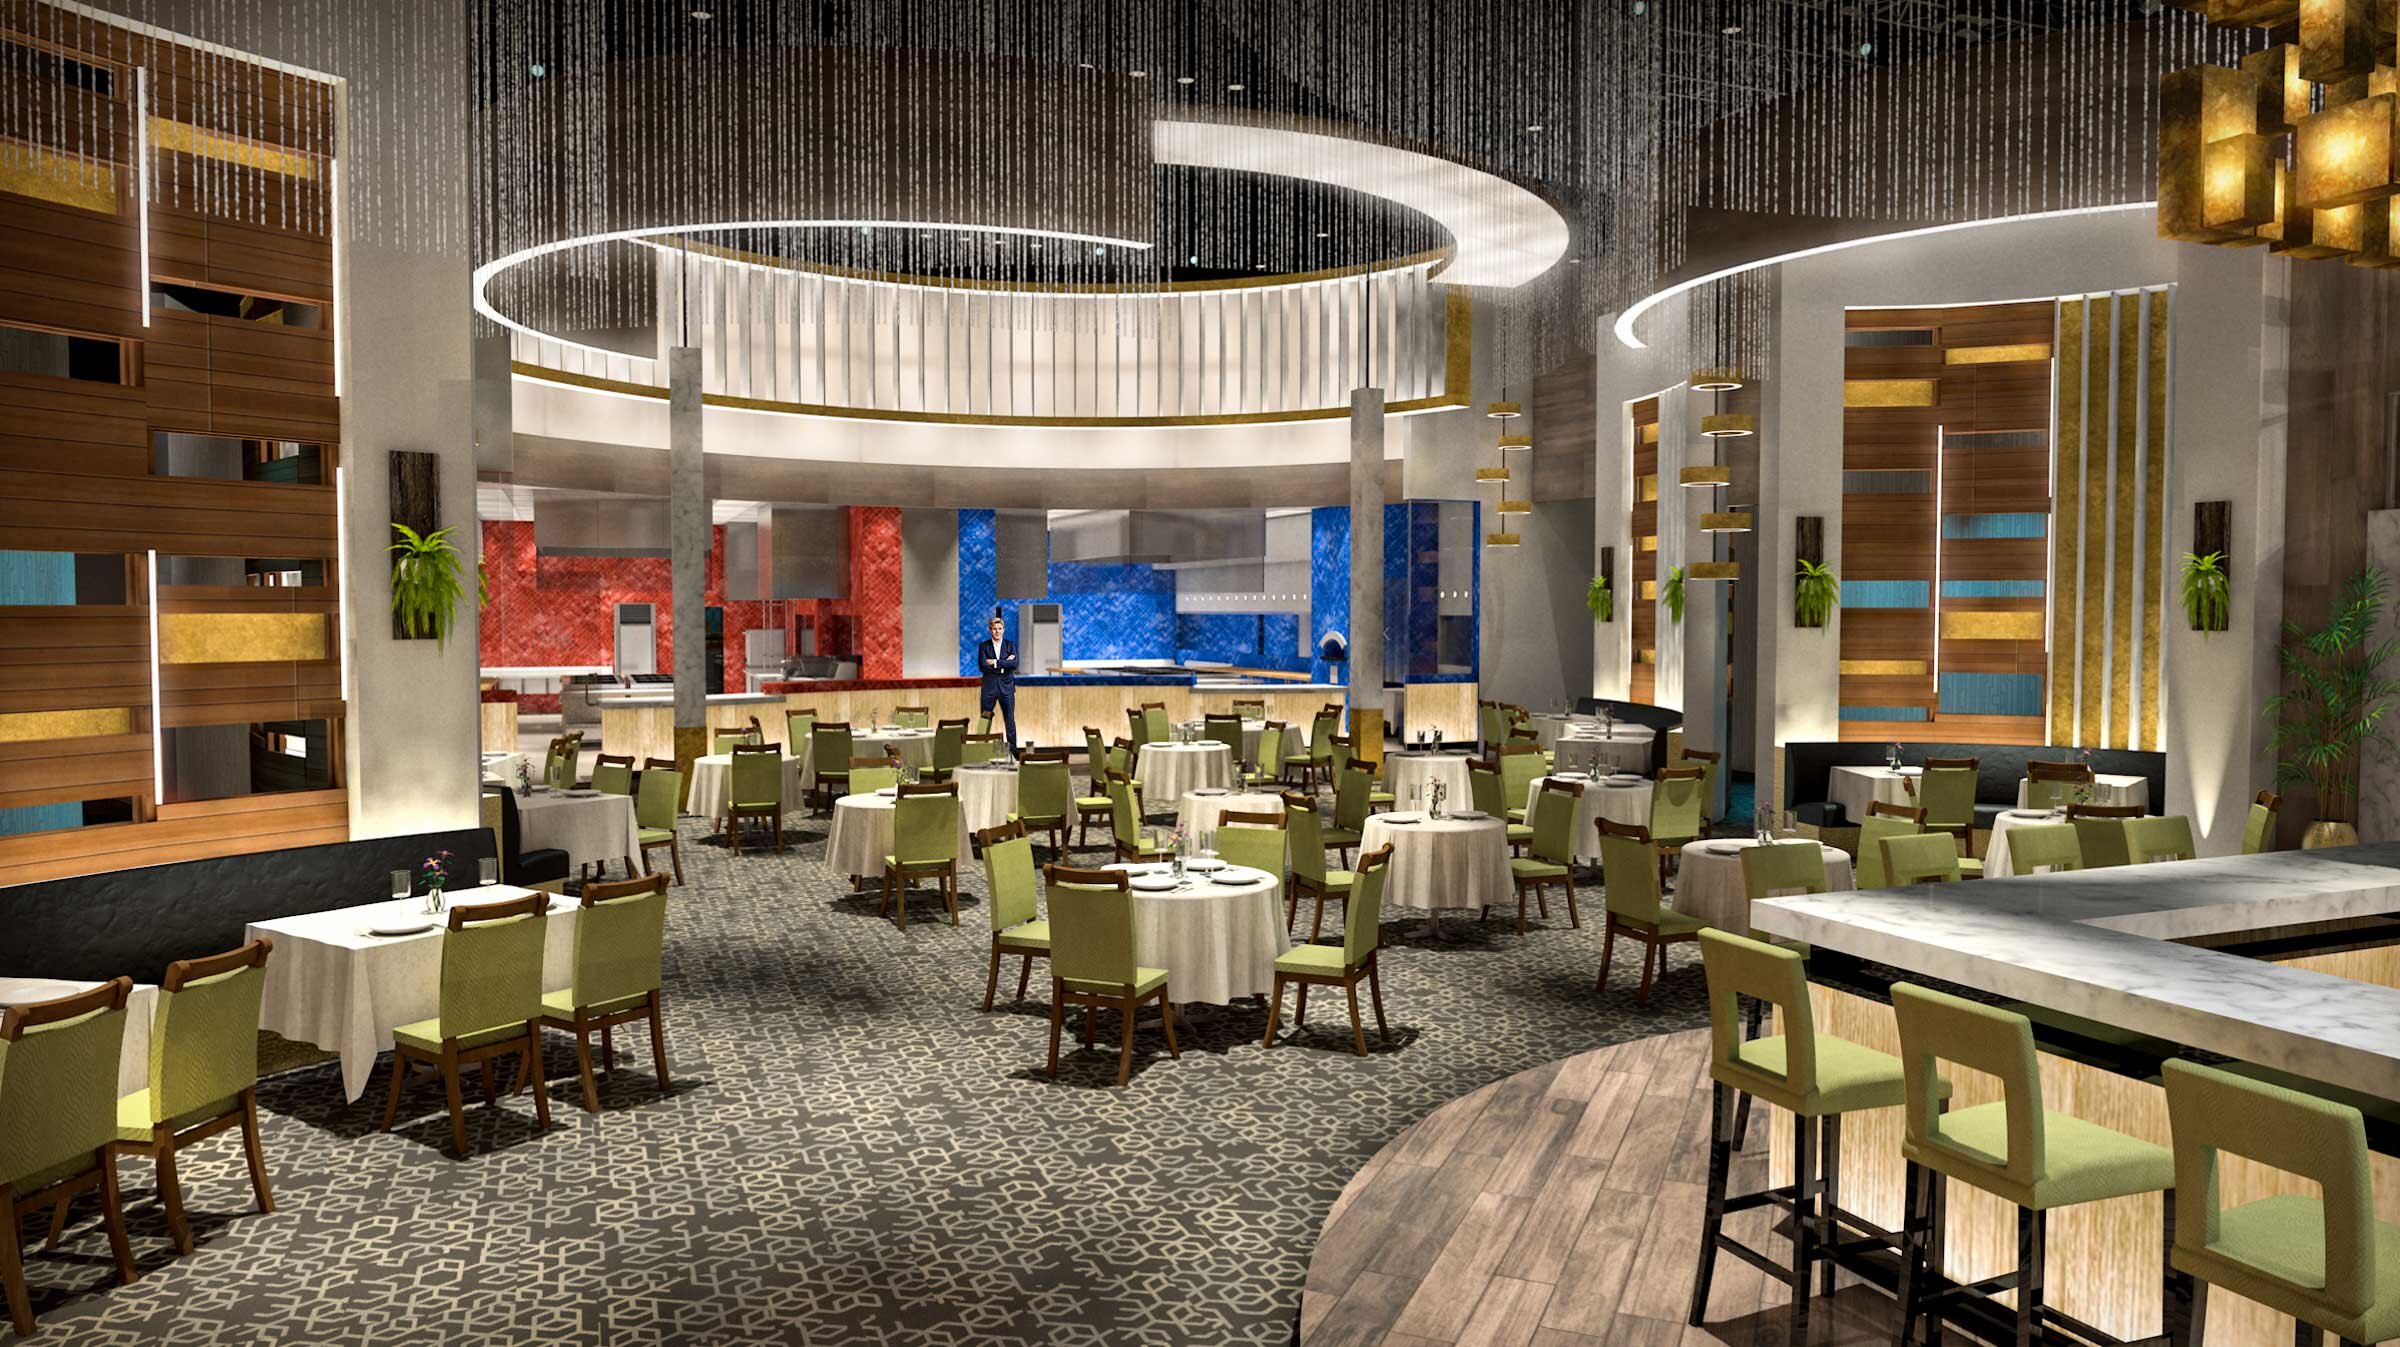 restaurant-concept-rendering-HK19-vectorworks-andybroomell-artdirector.jpg